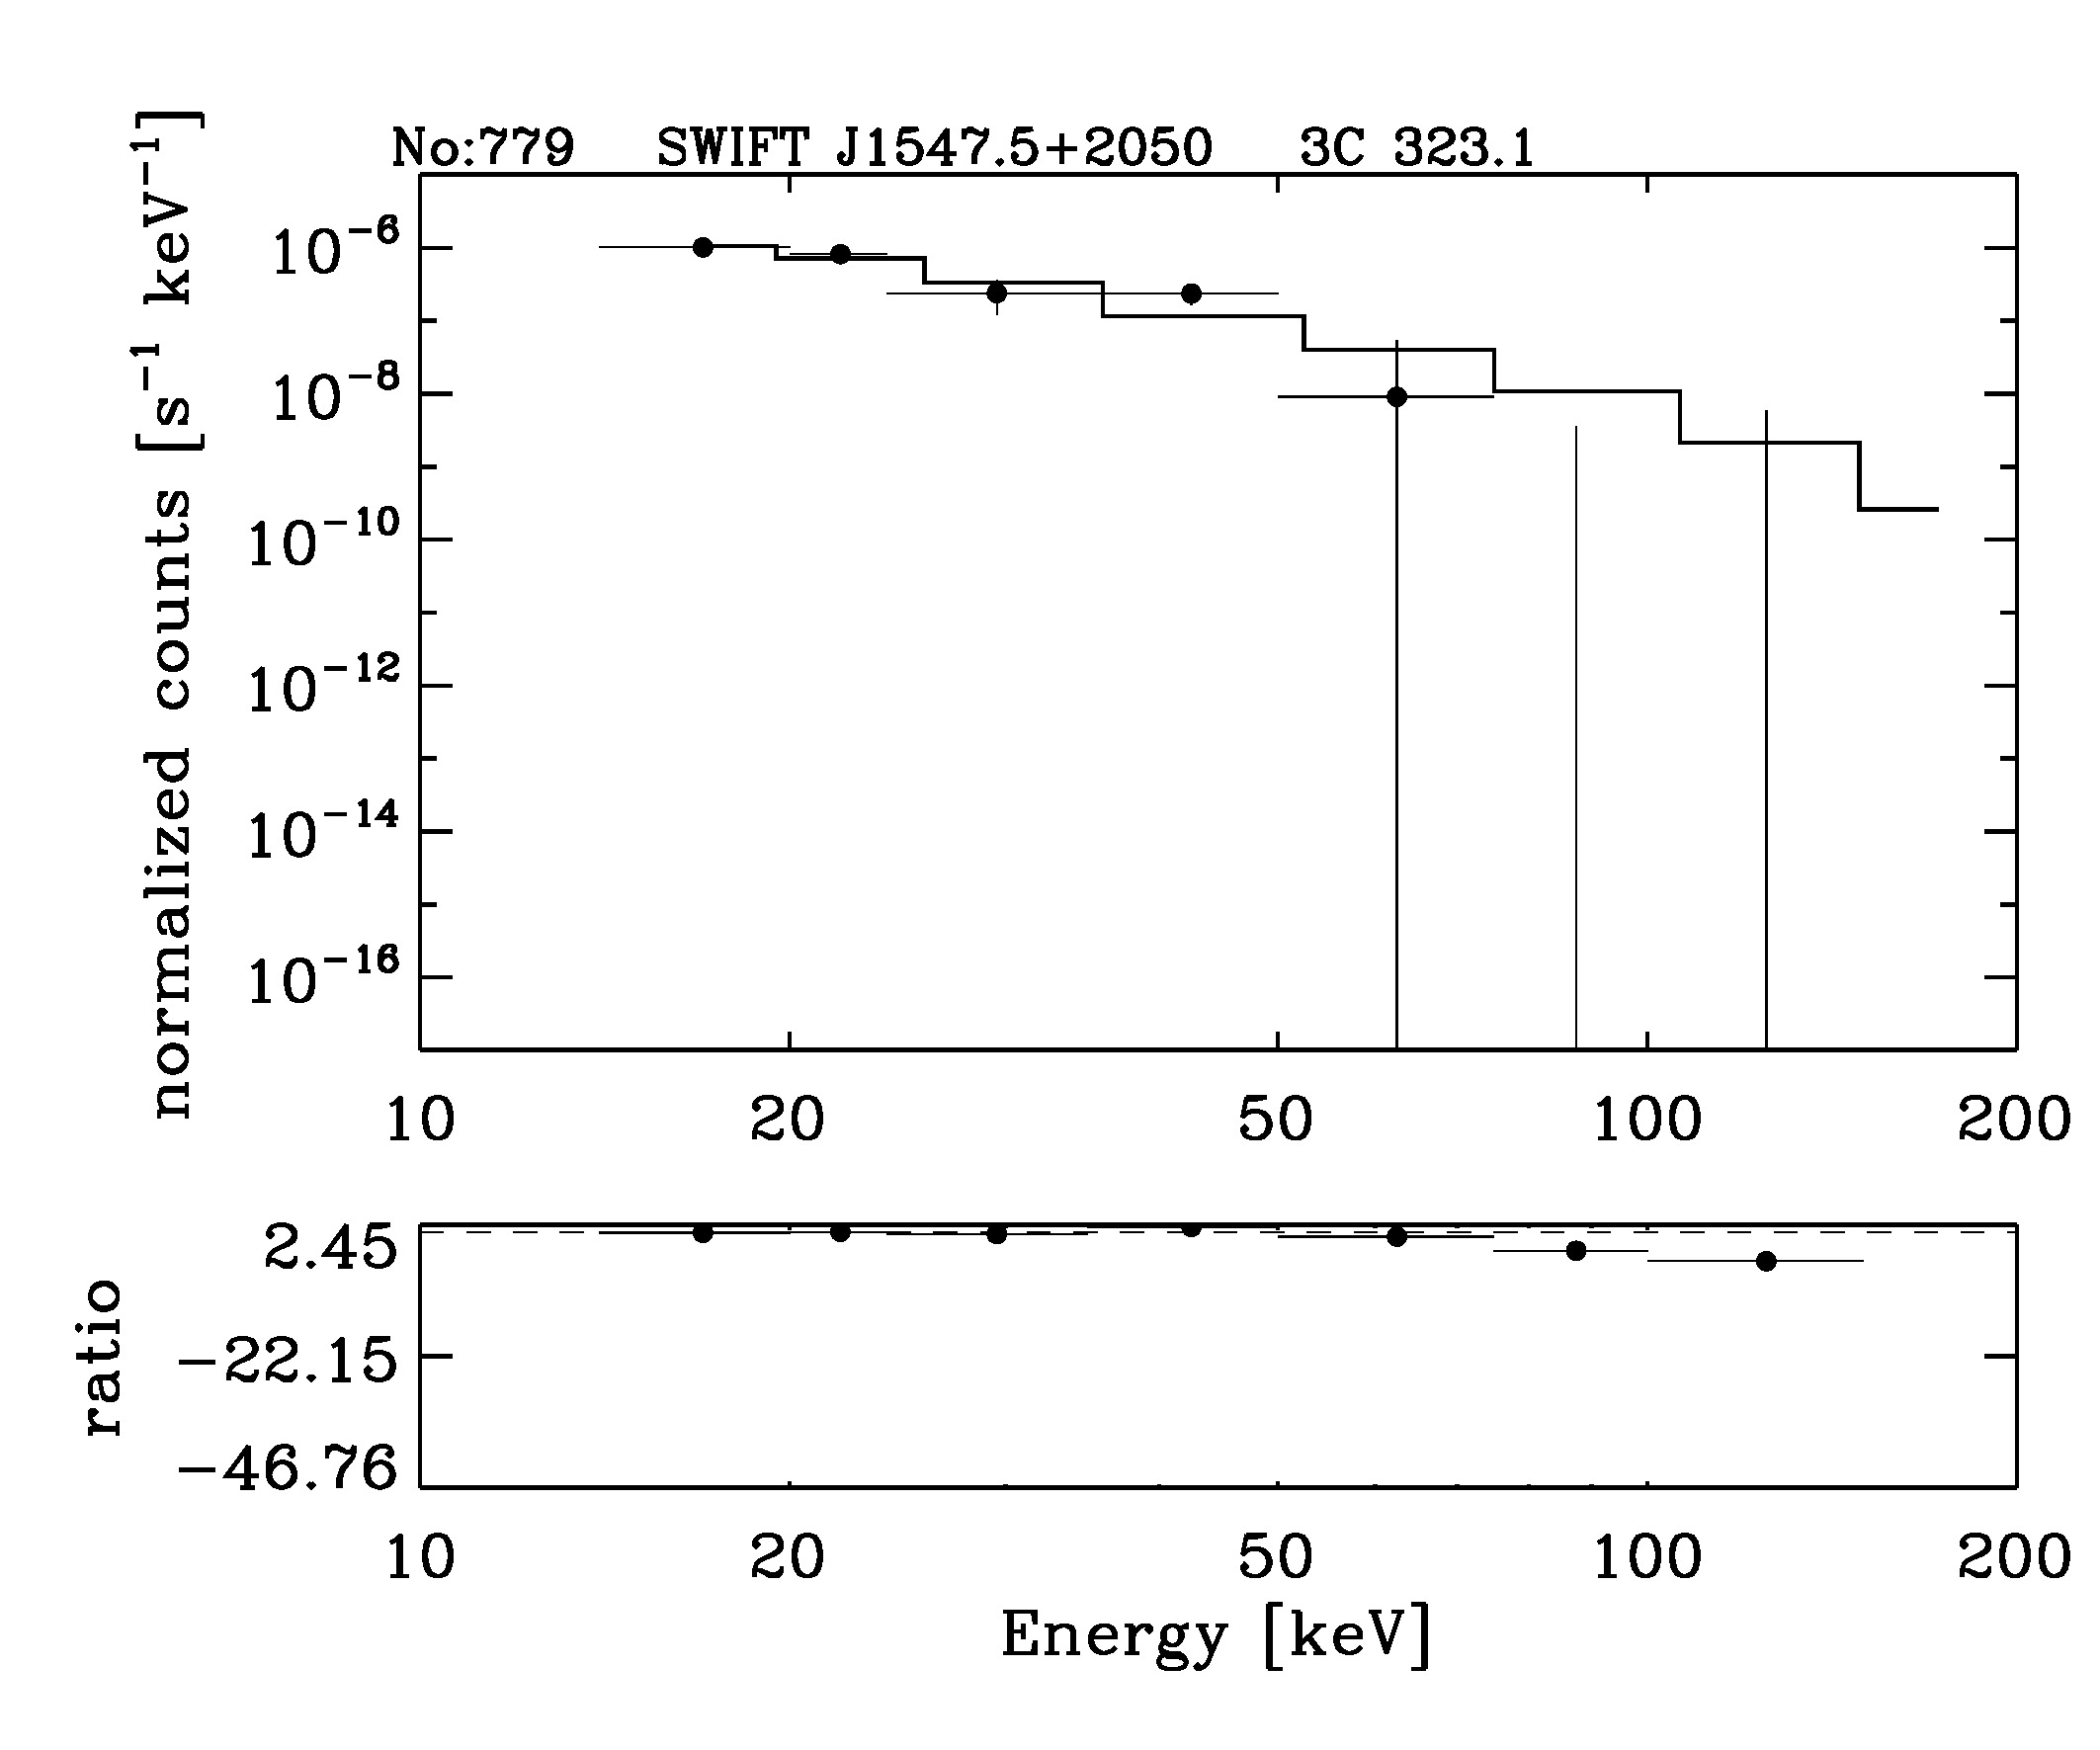 BAT Spectrum for SWIFT J1547.5+2050